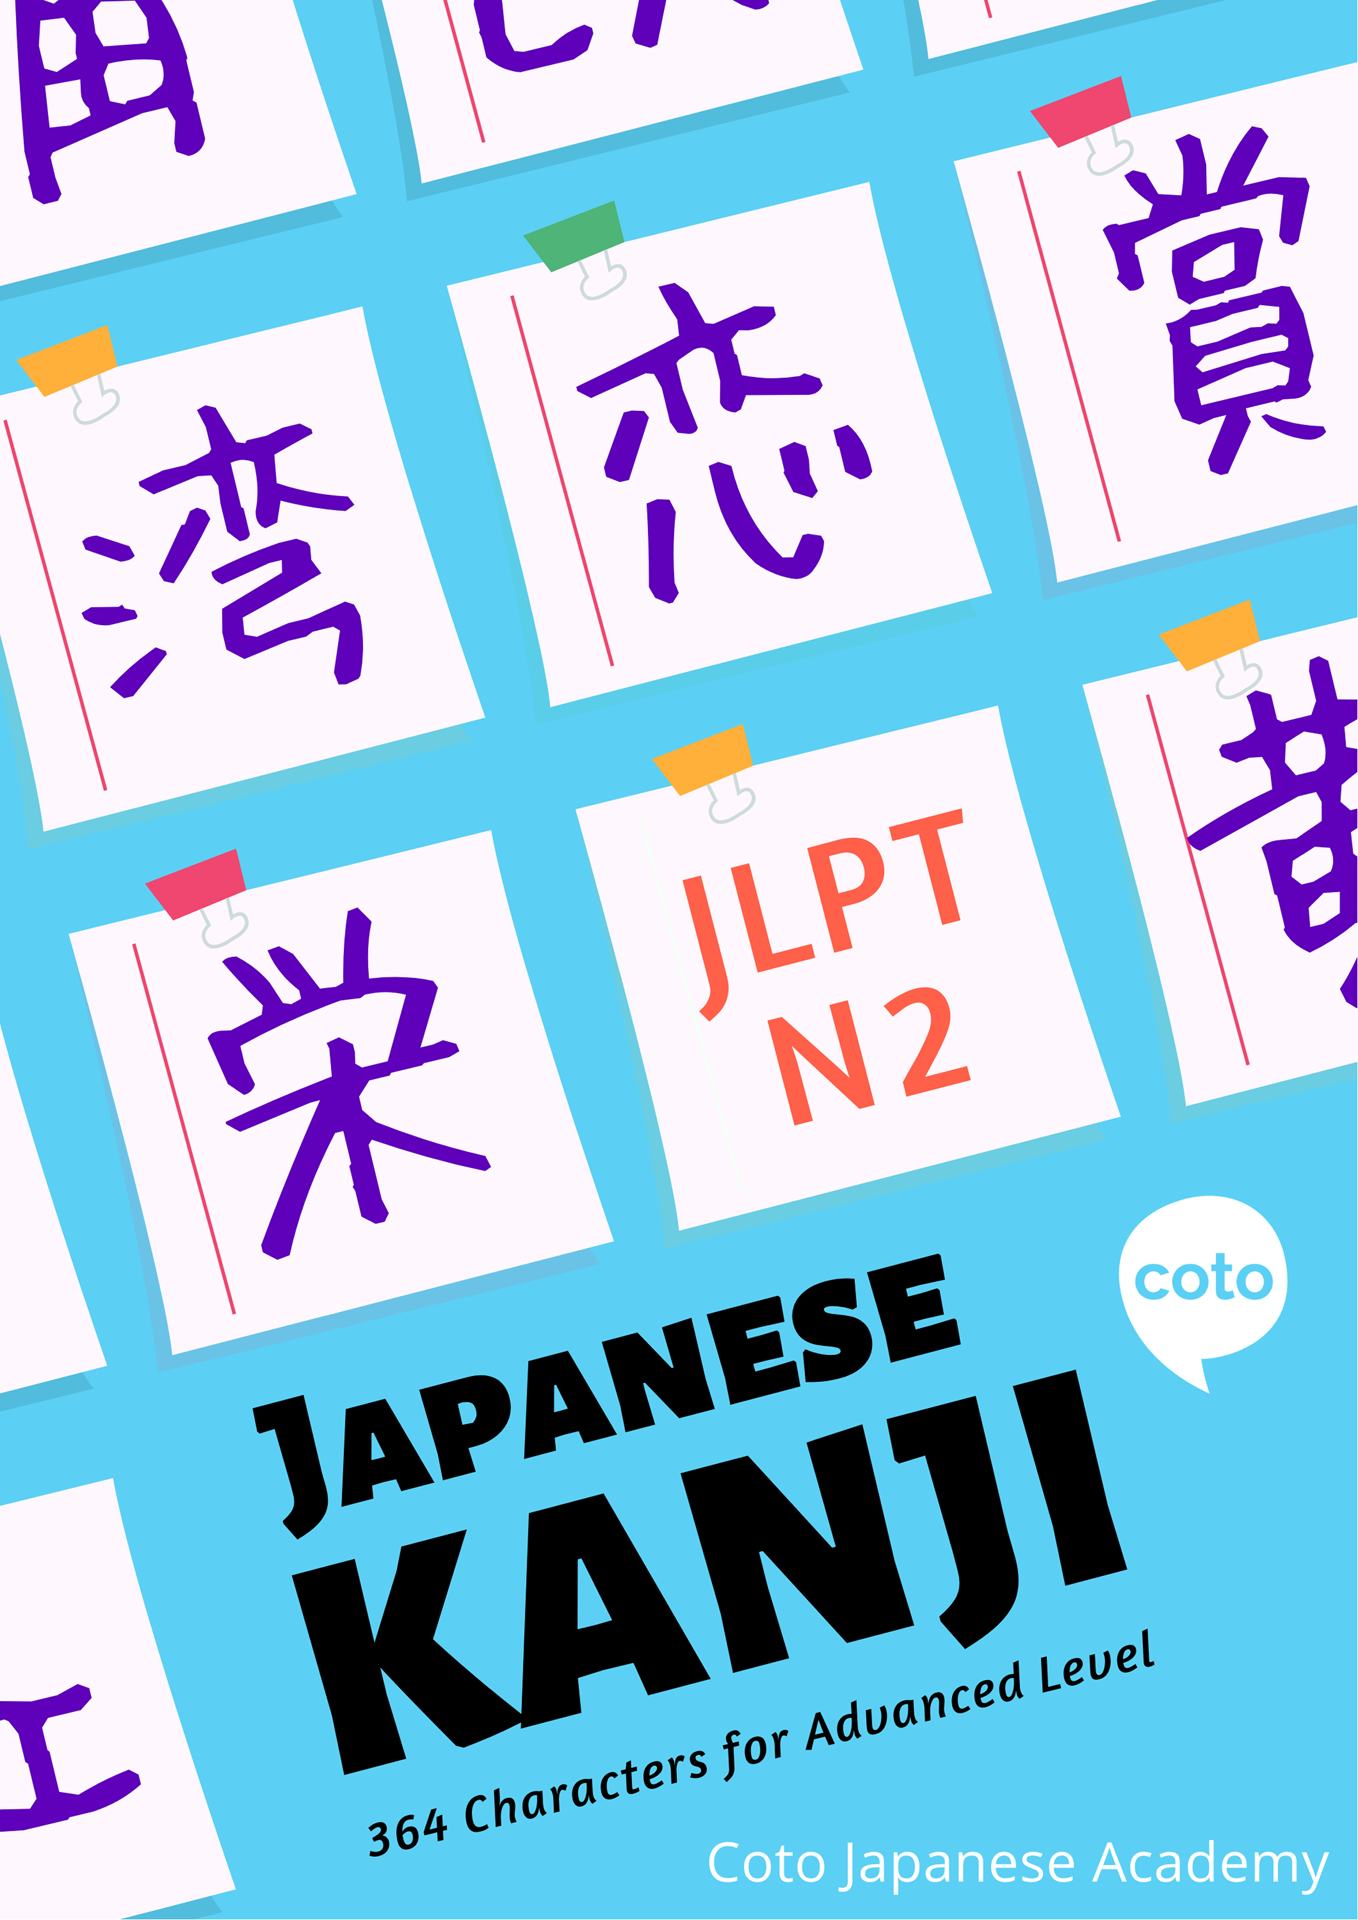 JLPT N2 Kanji Course (Quizzes, Workbook, Cheat sheet)